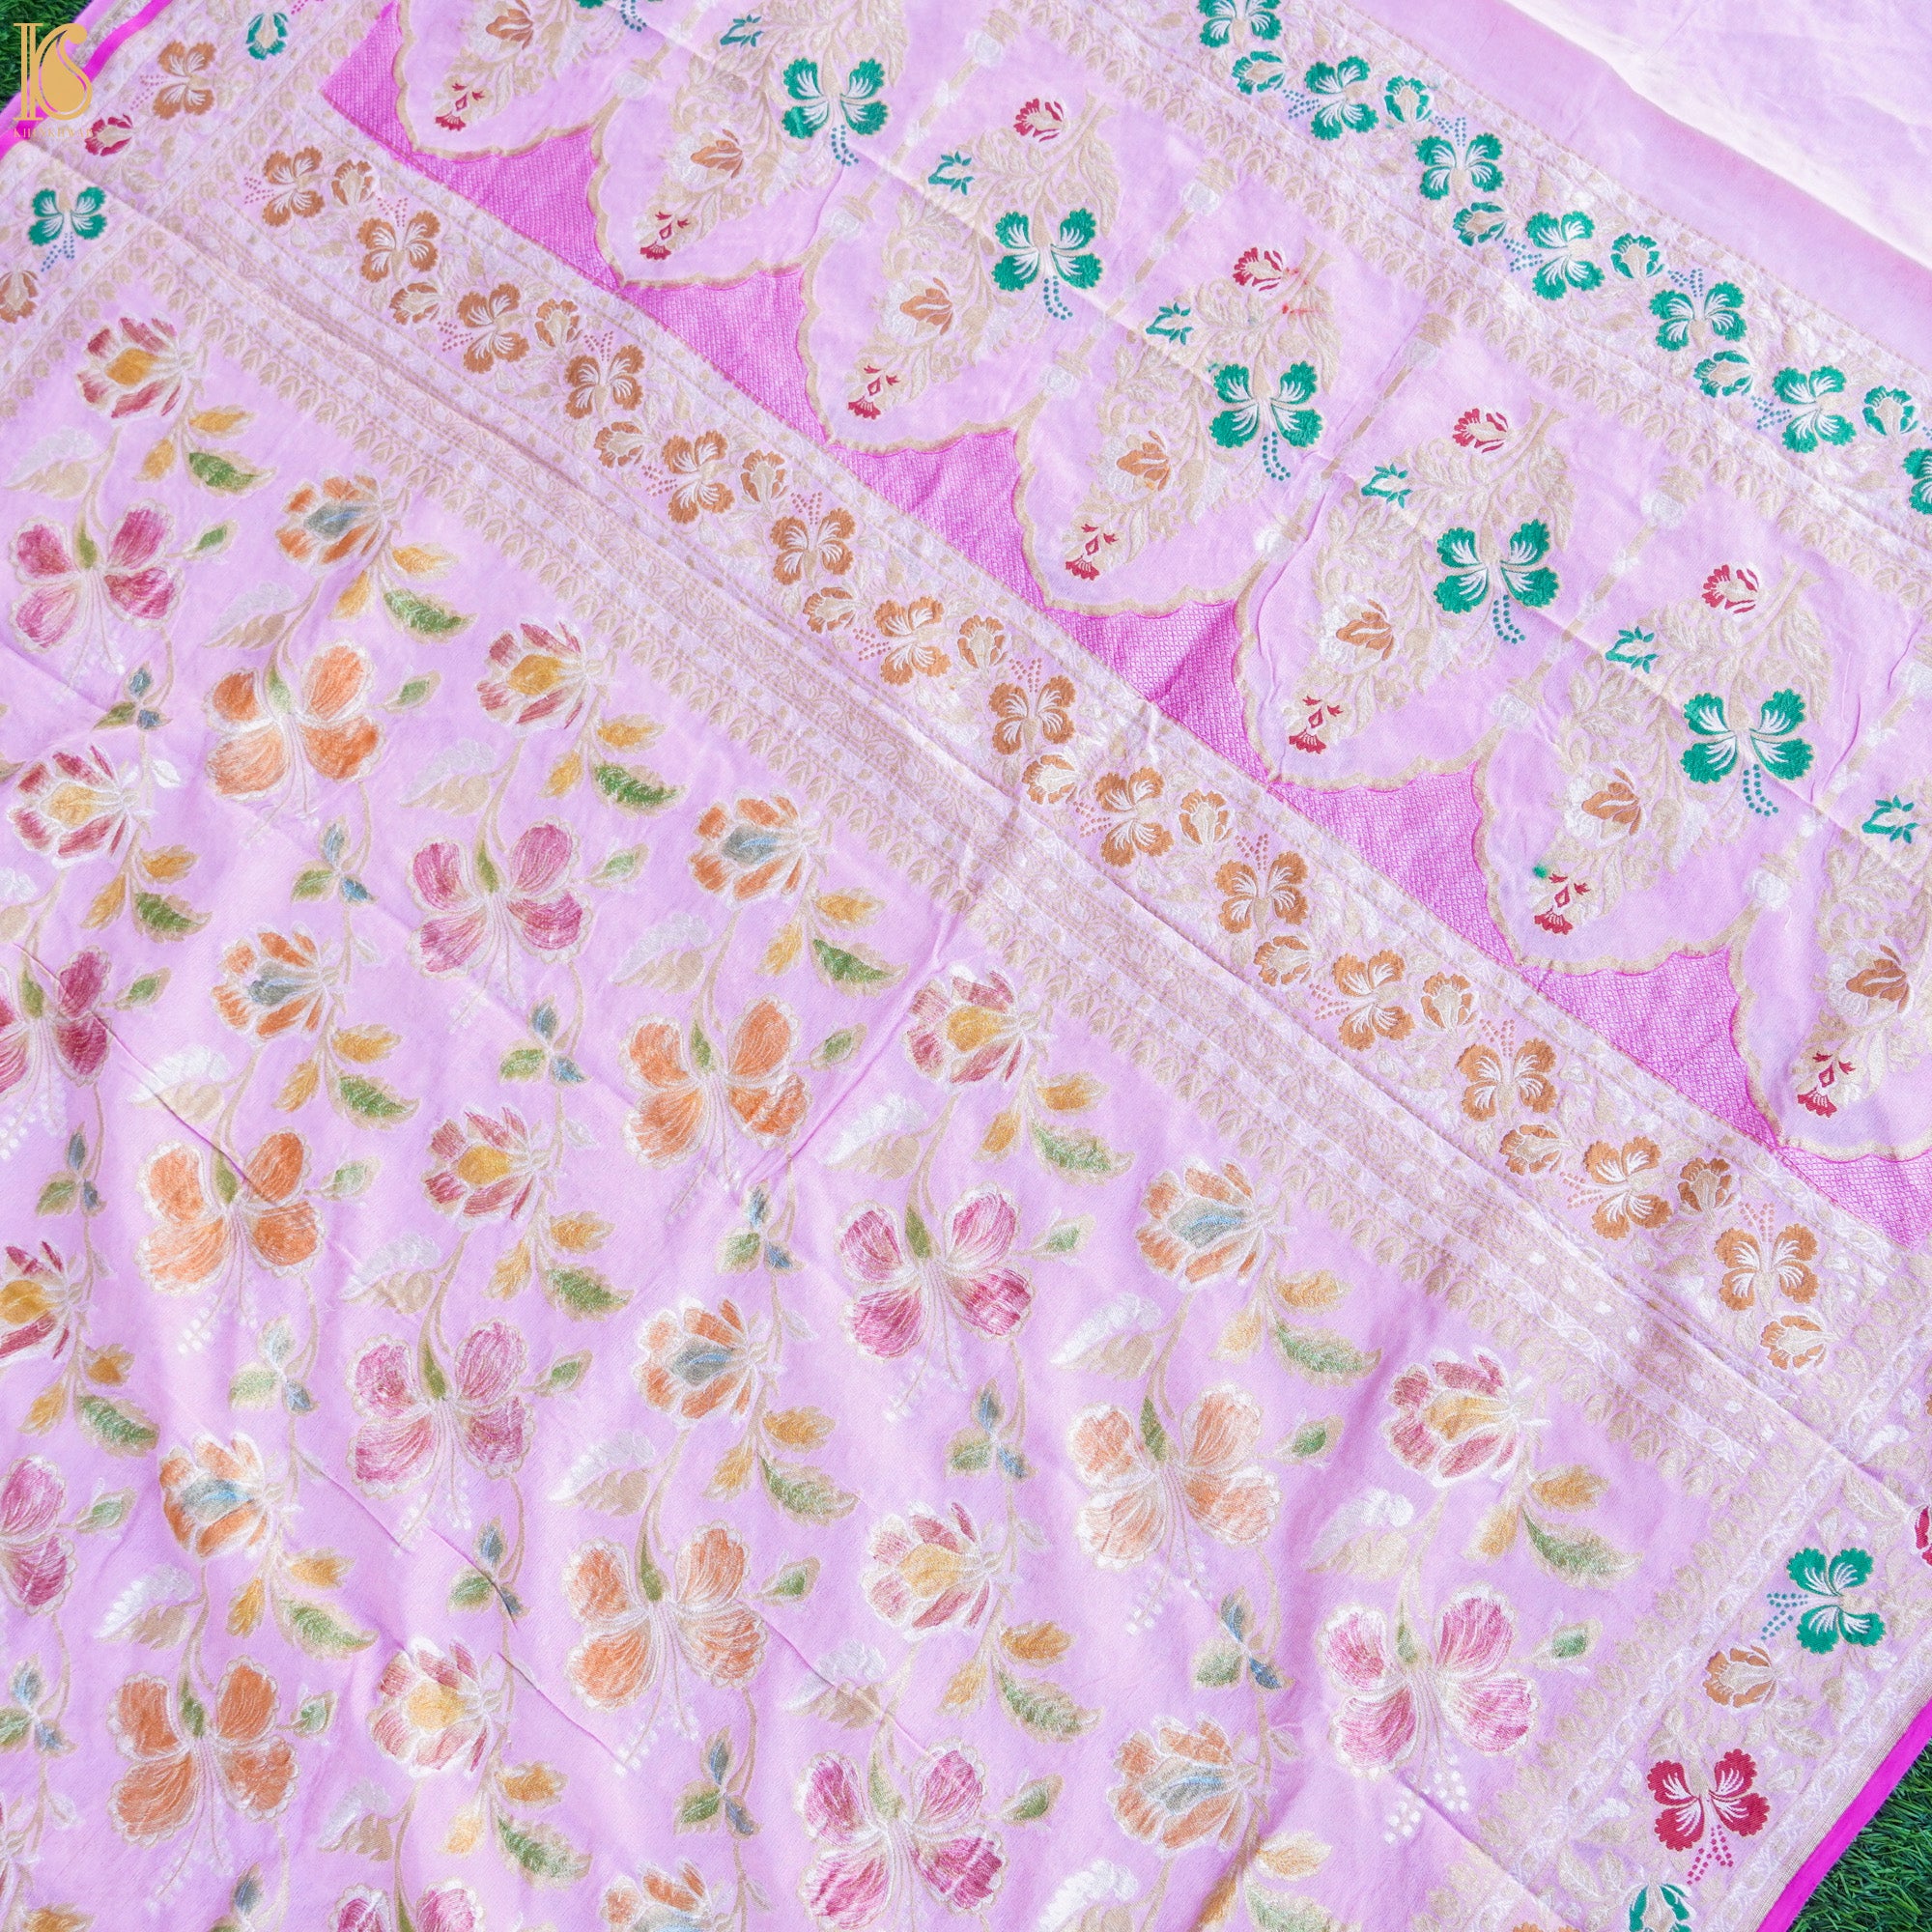 Thistle Pink Pure Georgette Handloom Banarasi Dahlia Saree - Khinkhwab